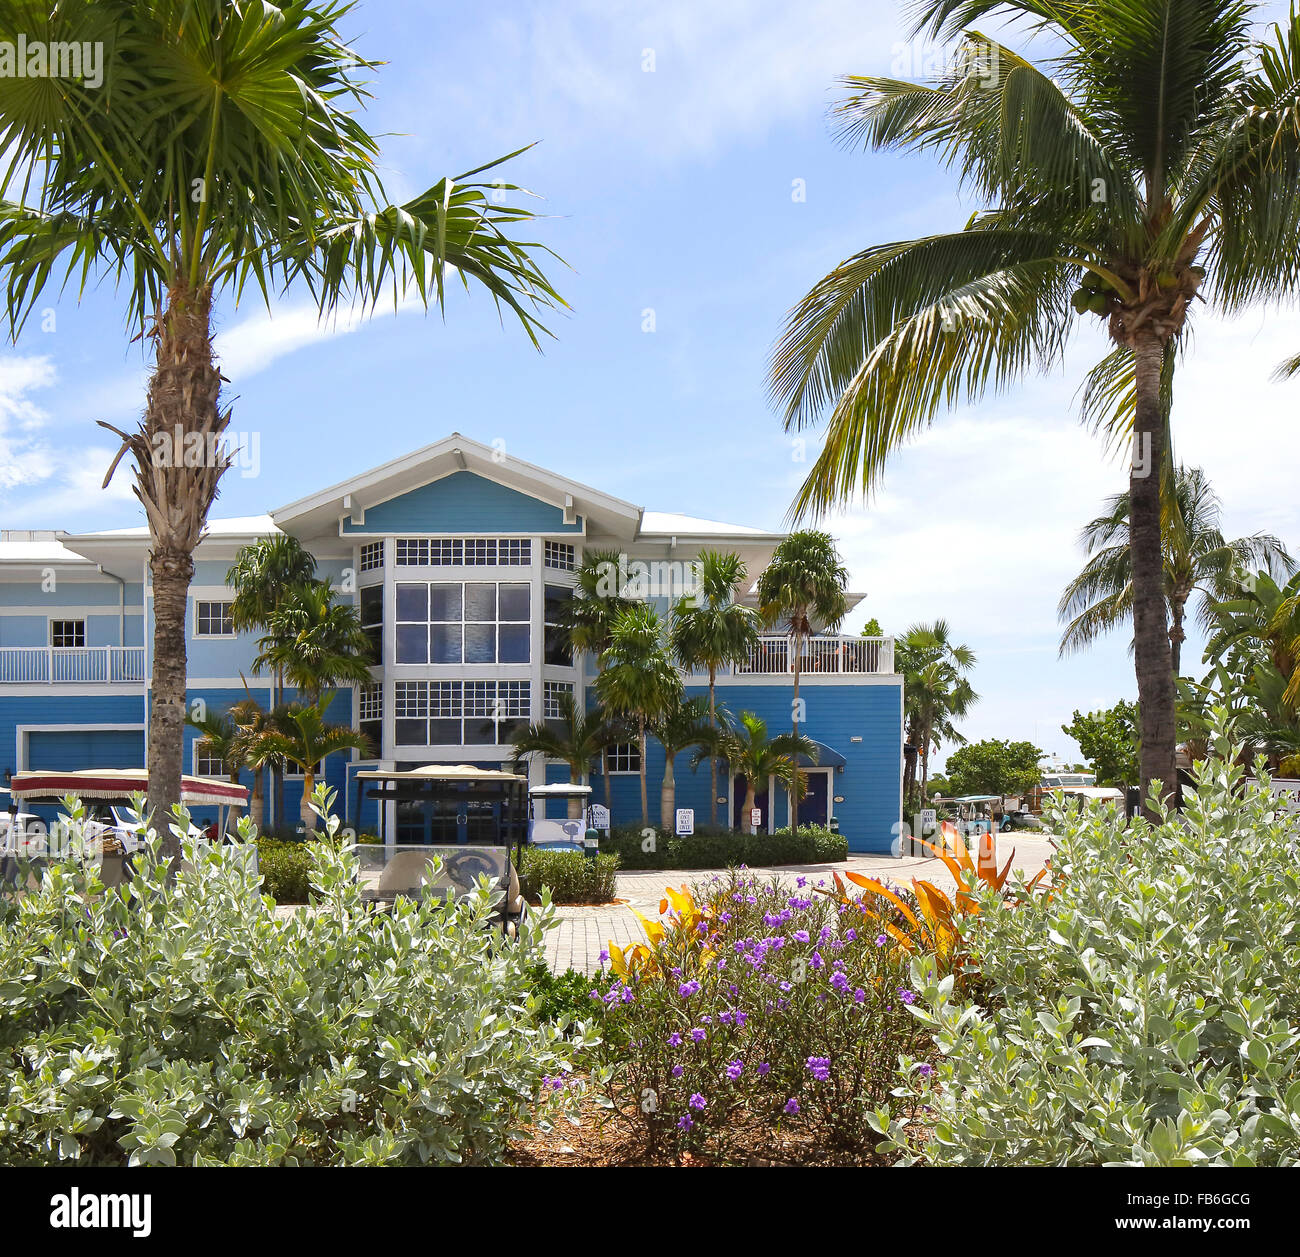 Vorderansicht. Gianni Ristorante, Key Largo, Vereinigte Staaten von Amerika. Architekt: unbekannt, 2015. Stockfoto